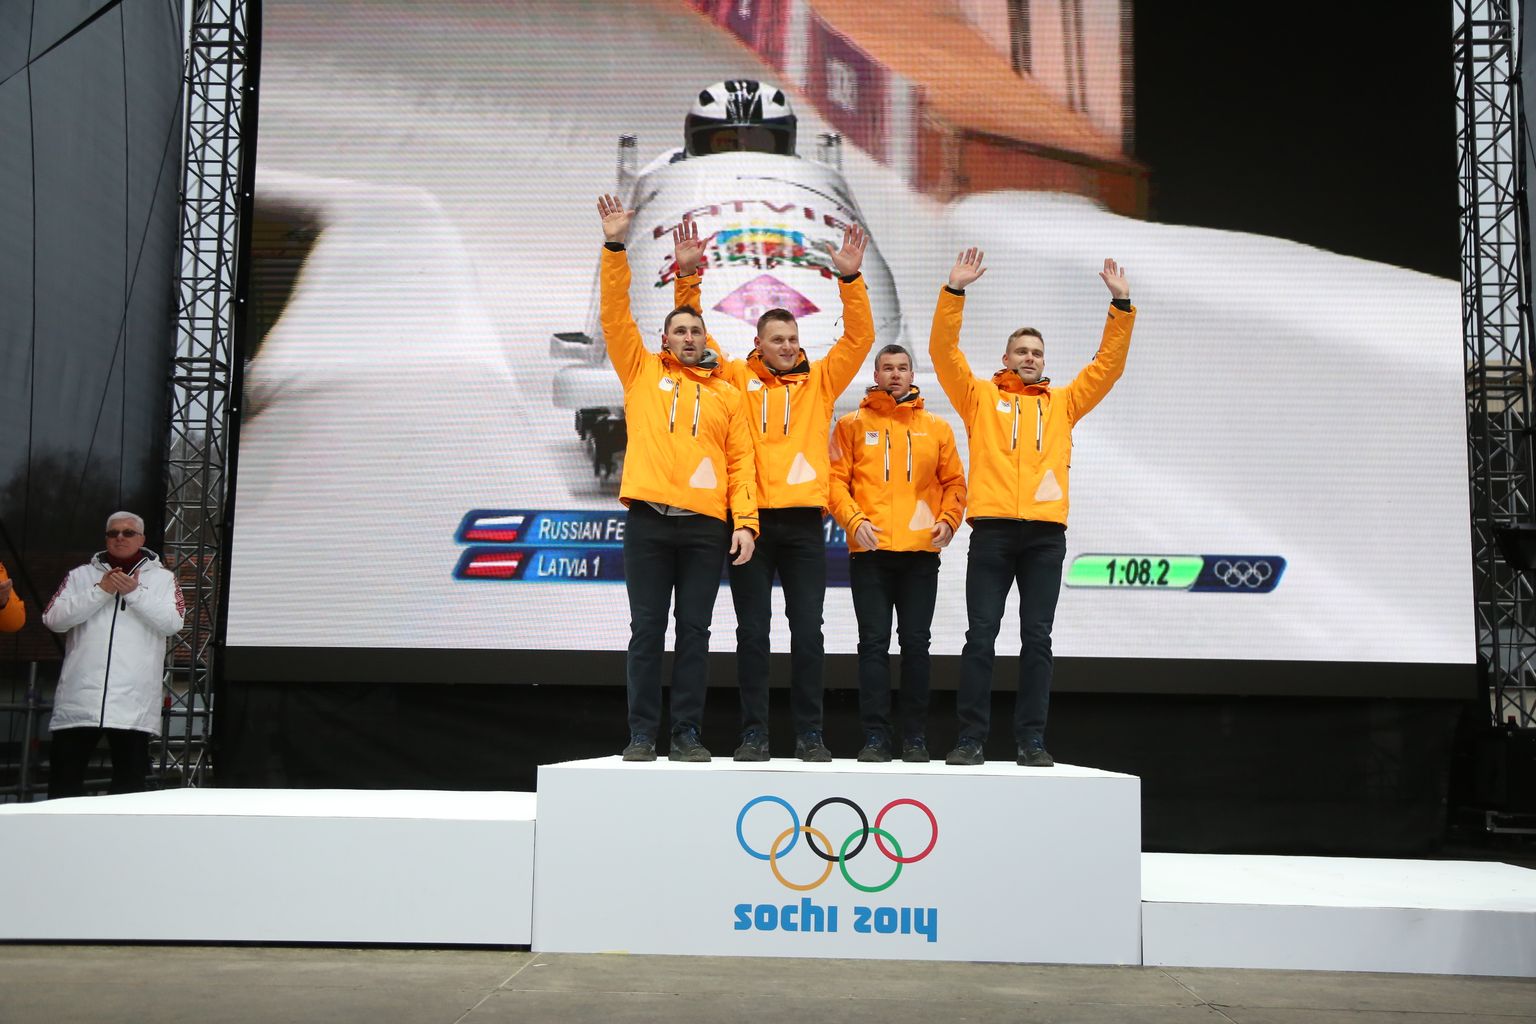 Latvijas bobsleja pilots Oskars Melbārdis ar stūmējiem Daumantu Dreiškenu, Arvi Vilkasti un Jāni Strengu sestdien Siguldā svinīgā ceremonijā saņēma 2014.gada Soču olimpisko spēļu zelta medaļas četriniekiem, bet Melbārdis ar Dreiškenu kaklā kāra arī bronzas godalgas divniekiem.